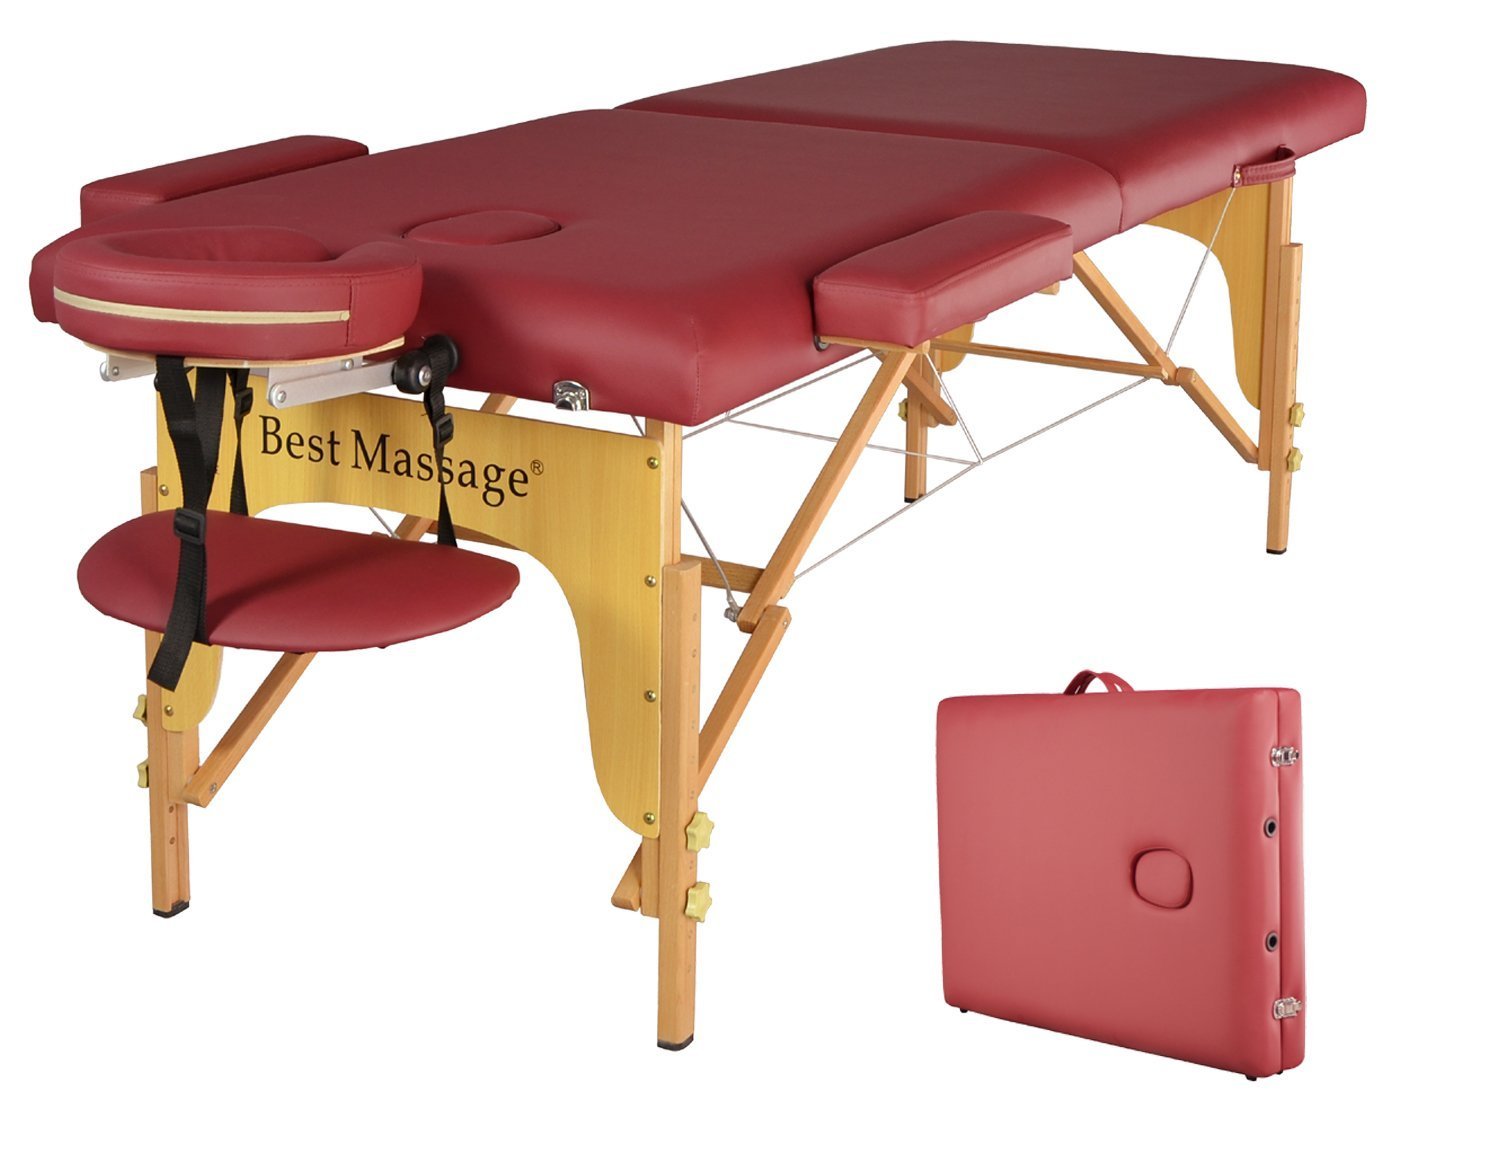 Большой массажный стол. Массажный стол Ferrox via Crevada 85. Redcord массажный стол. Массажный стол best massage. Массажный стол с отверстием для живота.